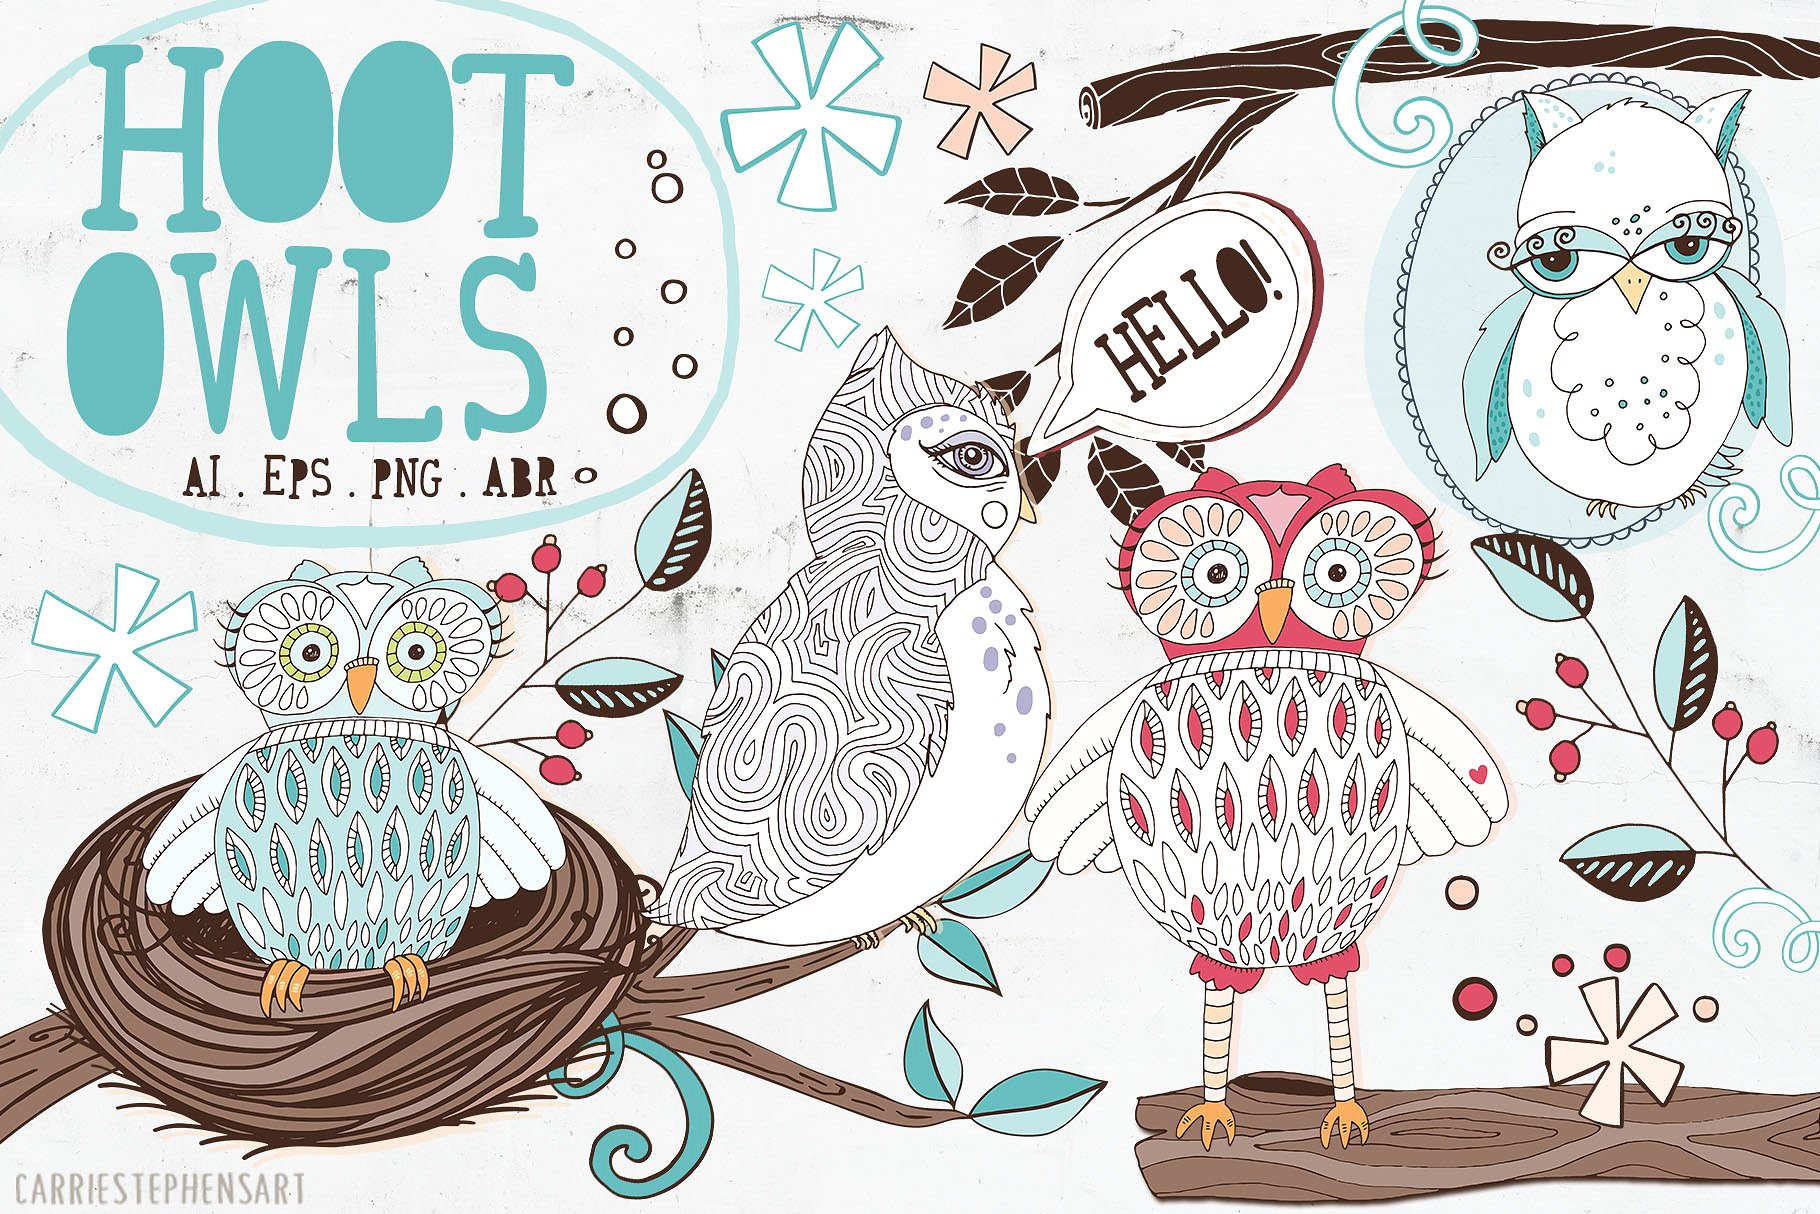 可爱猫头鹰矢量剪切画素材 Cute Owl Graphics Set插图